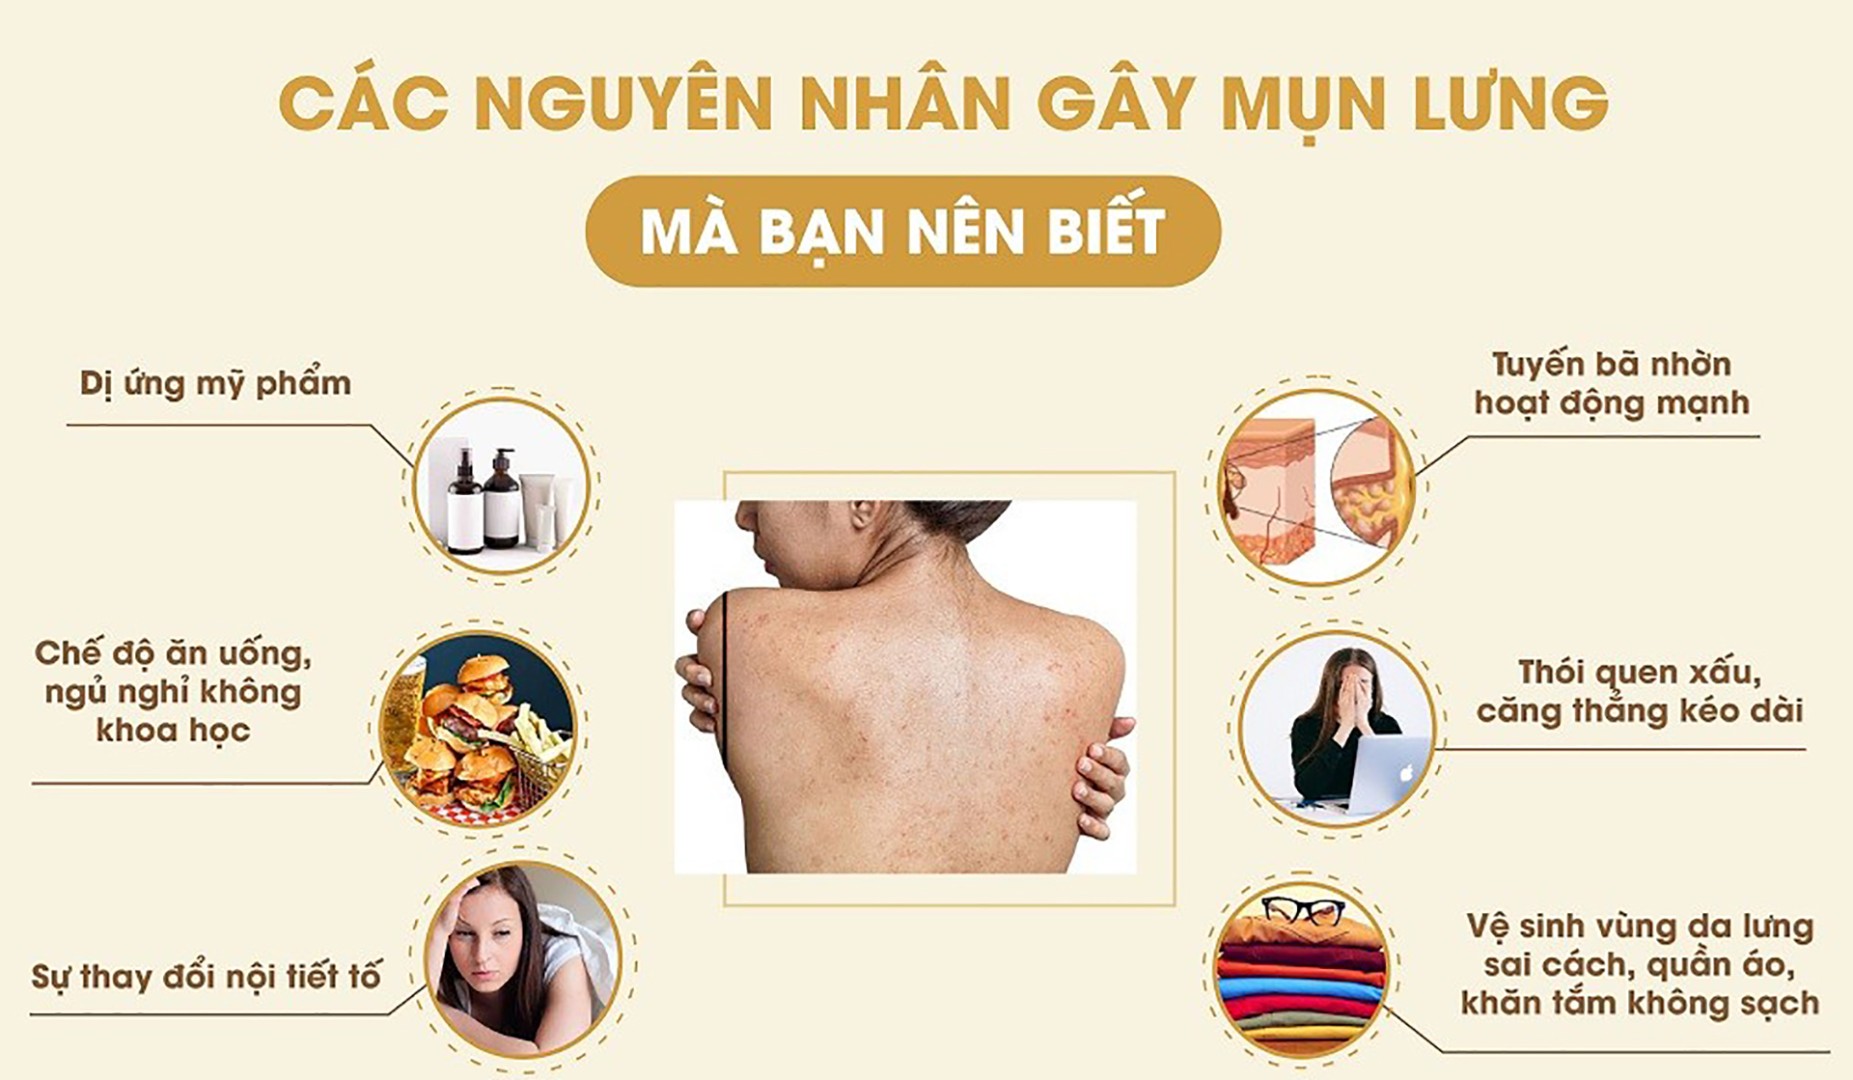 Nguyen Nhan Gay Ra Mun Lung